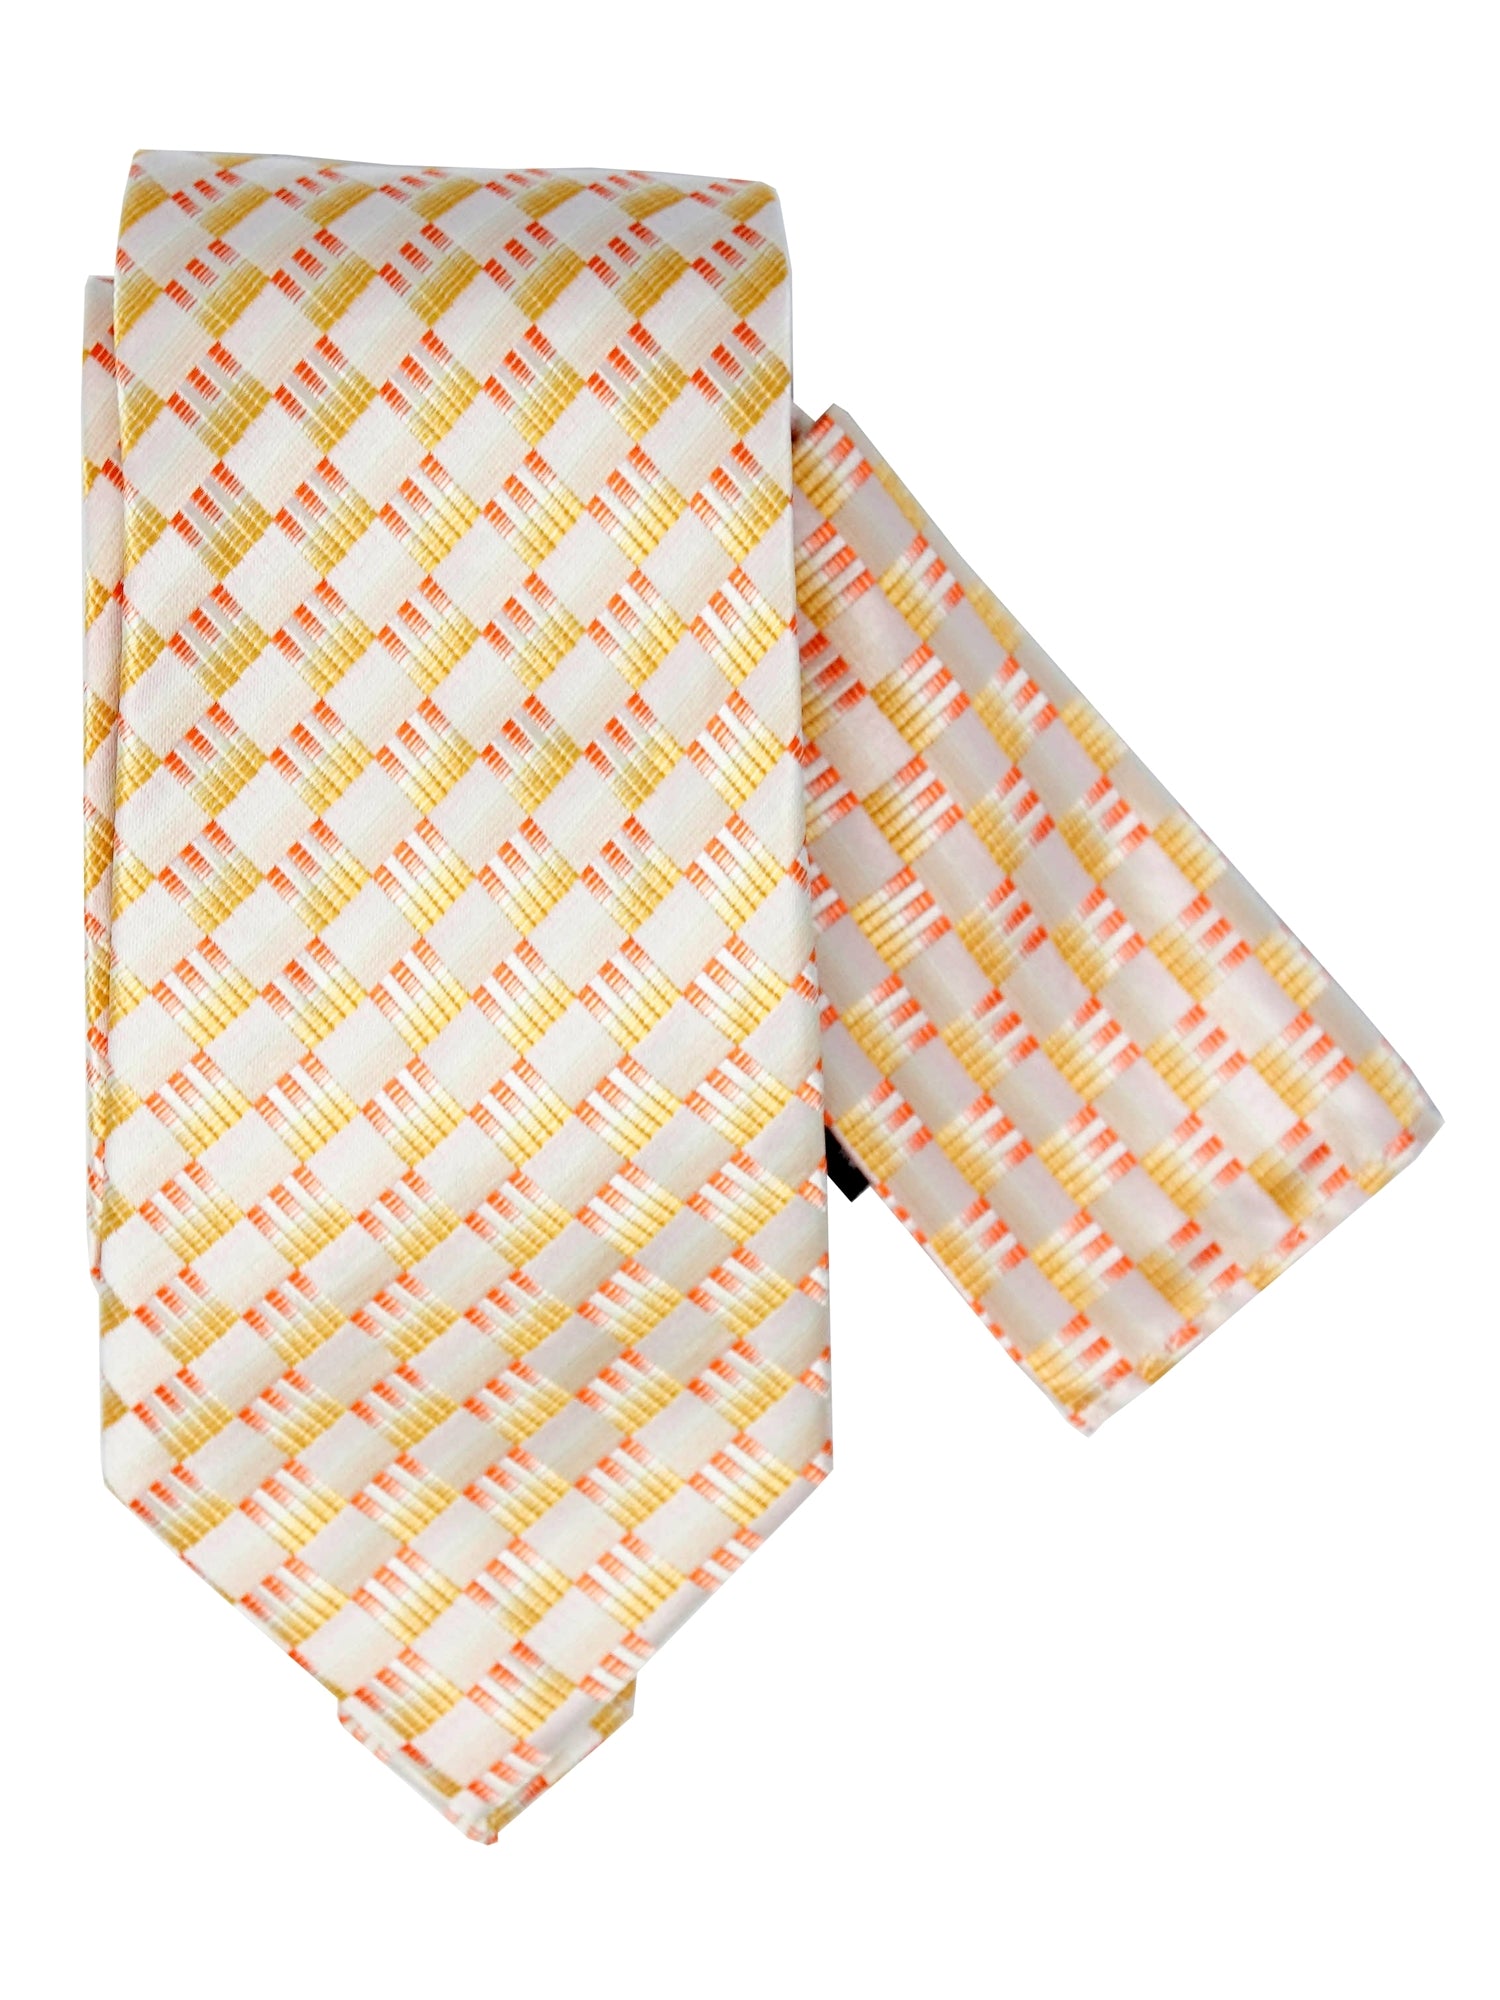 Men's Silk Woven Wedding Neck Tie With Handkerchief Neck Tie TheDapperTie Yellow & Orange Geometric Regular 